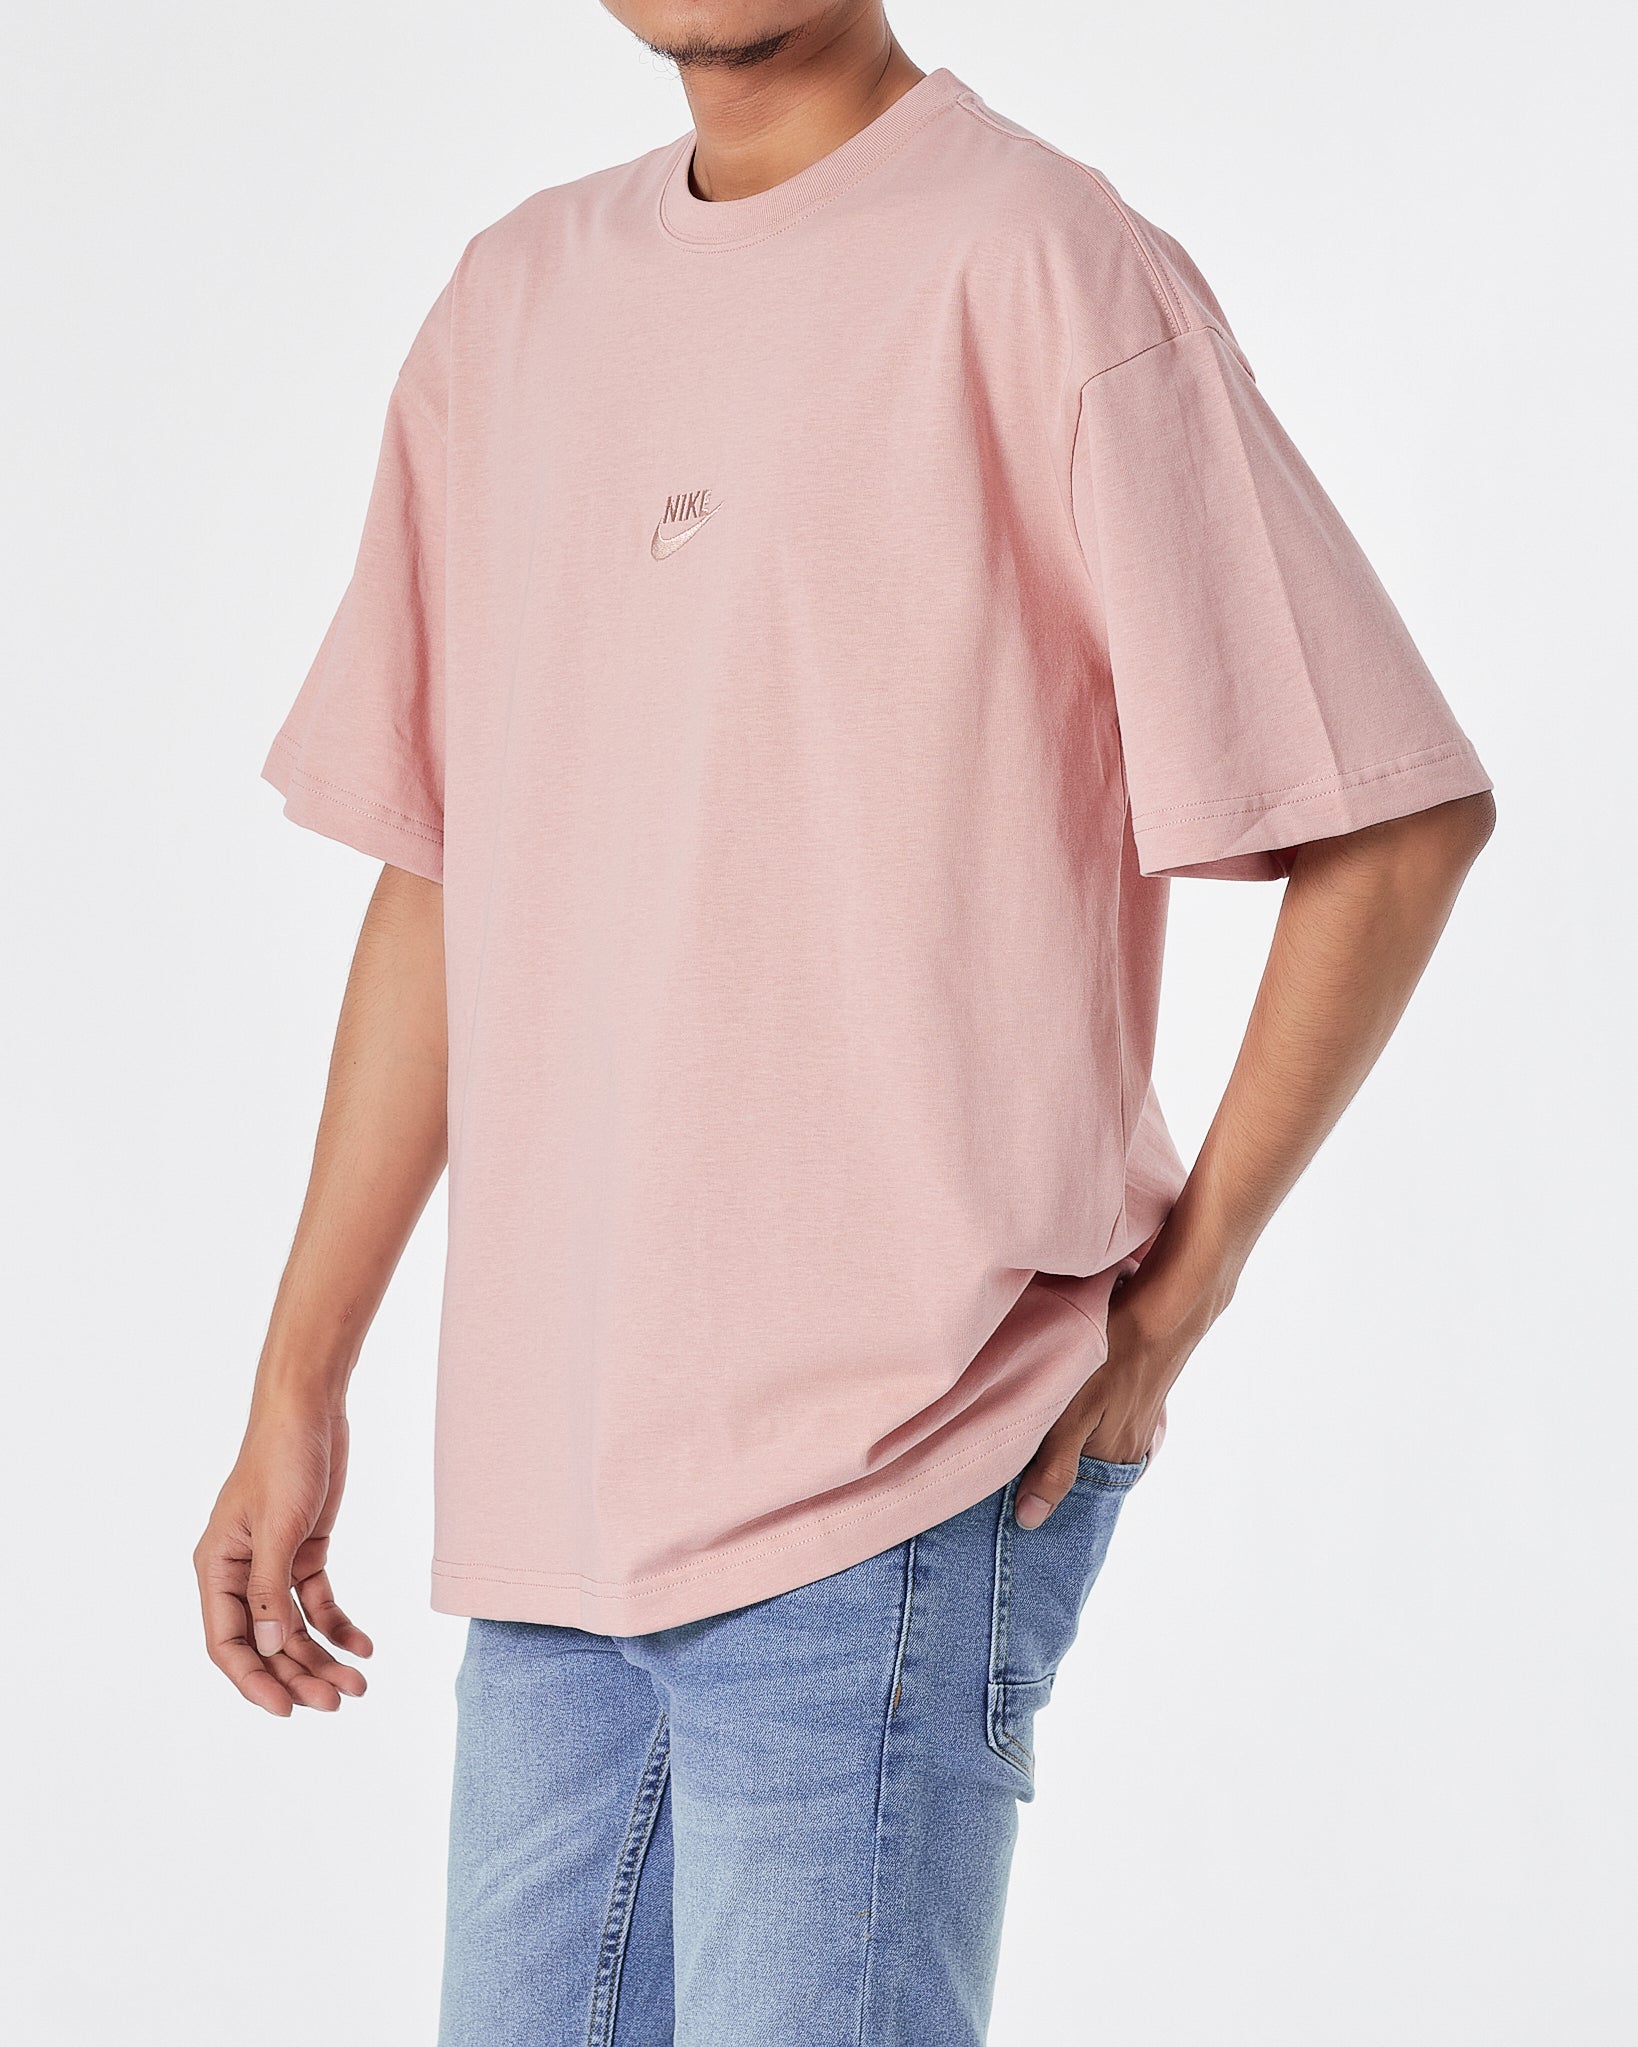 NIK Logo Embroidered Men Pink T-Shirt 16.90